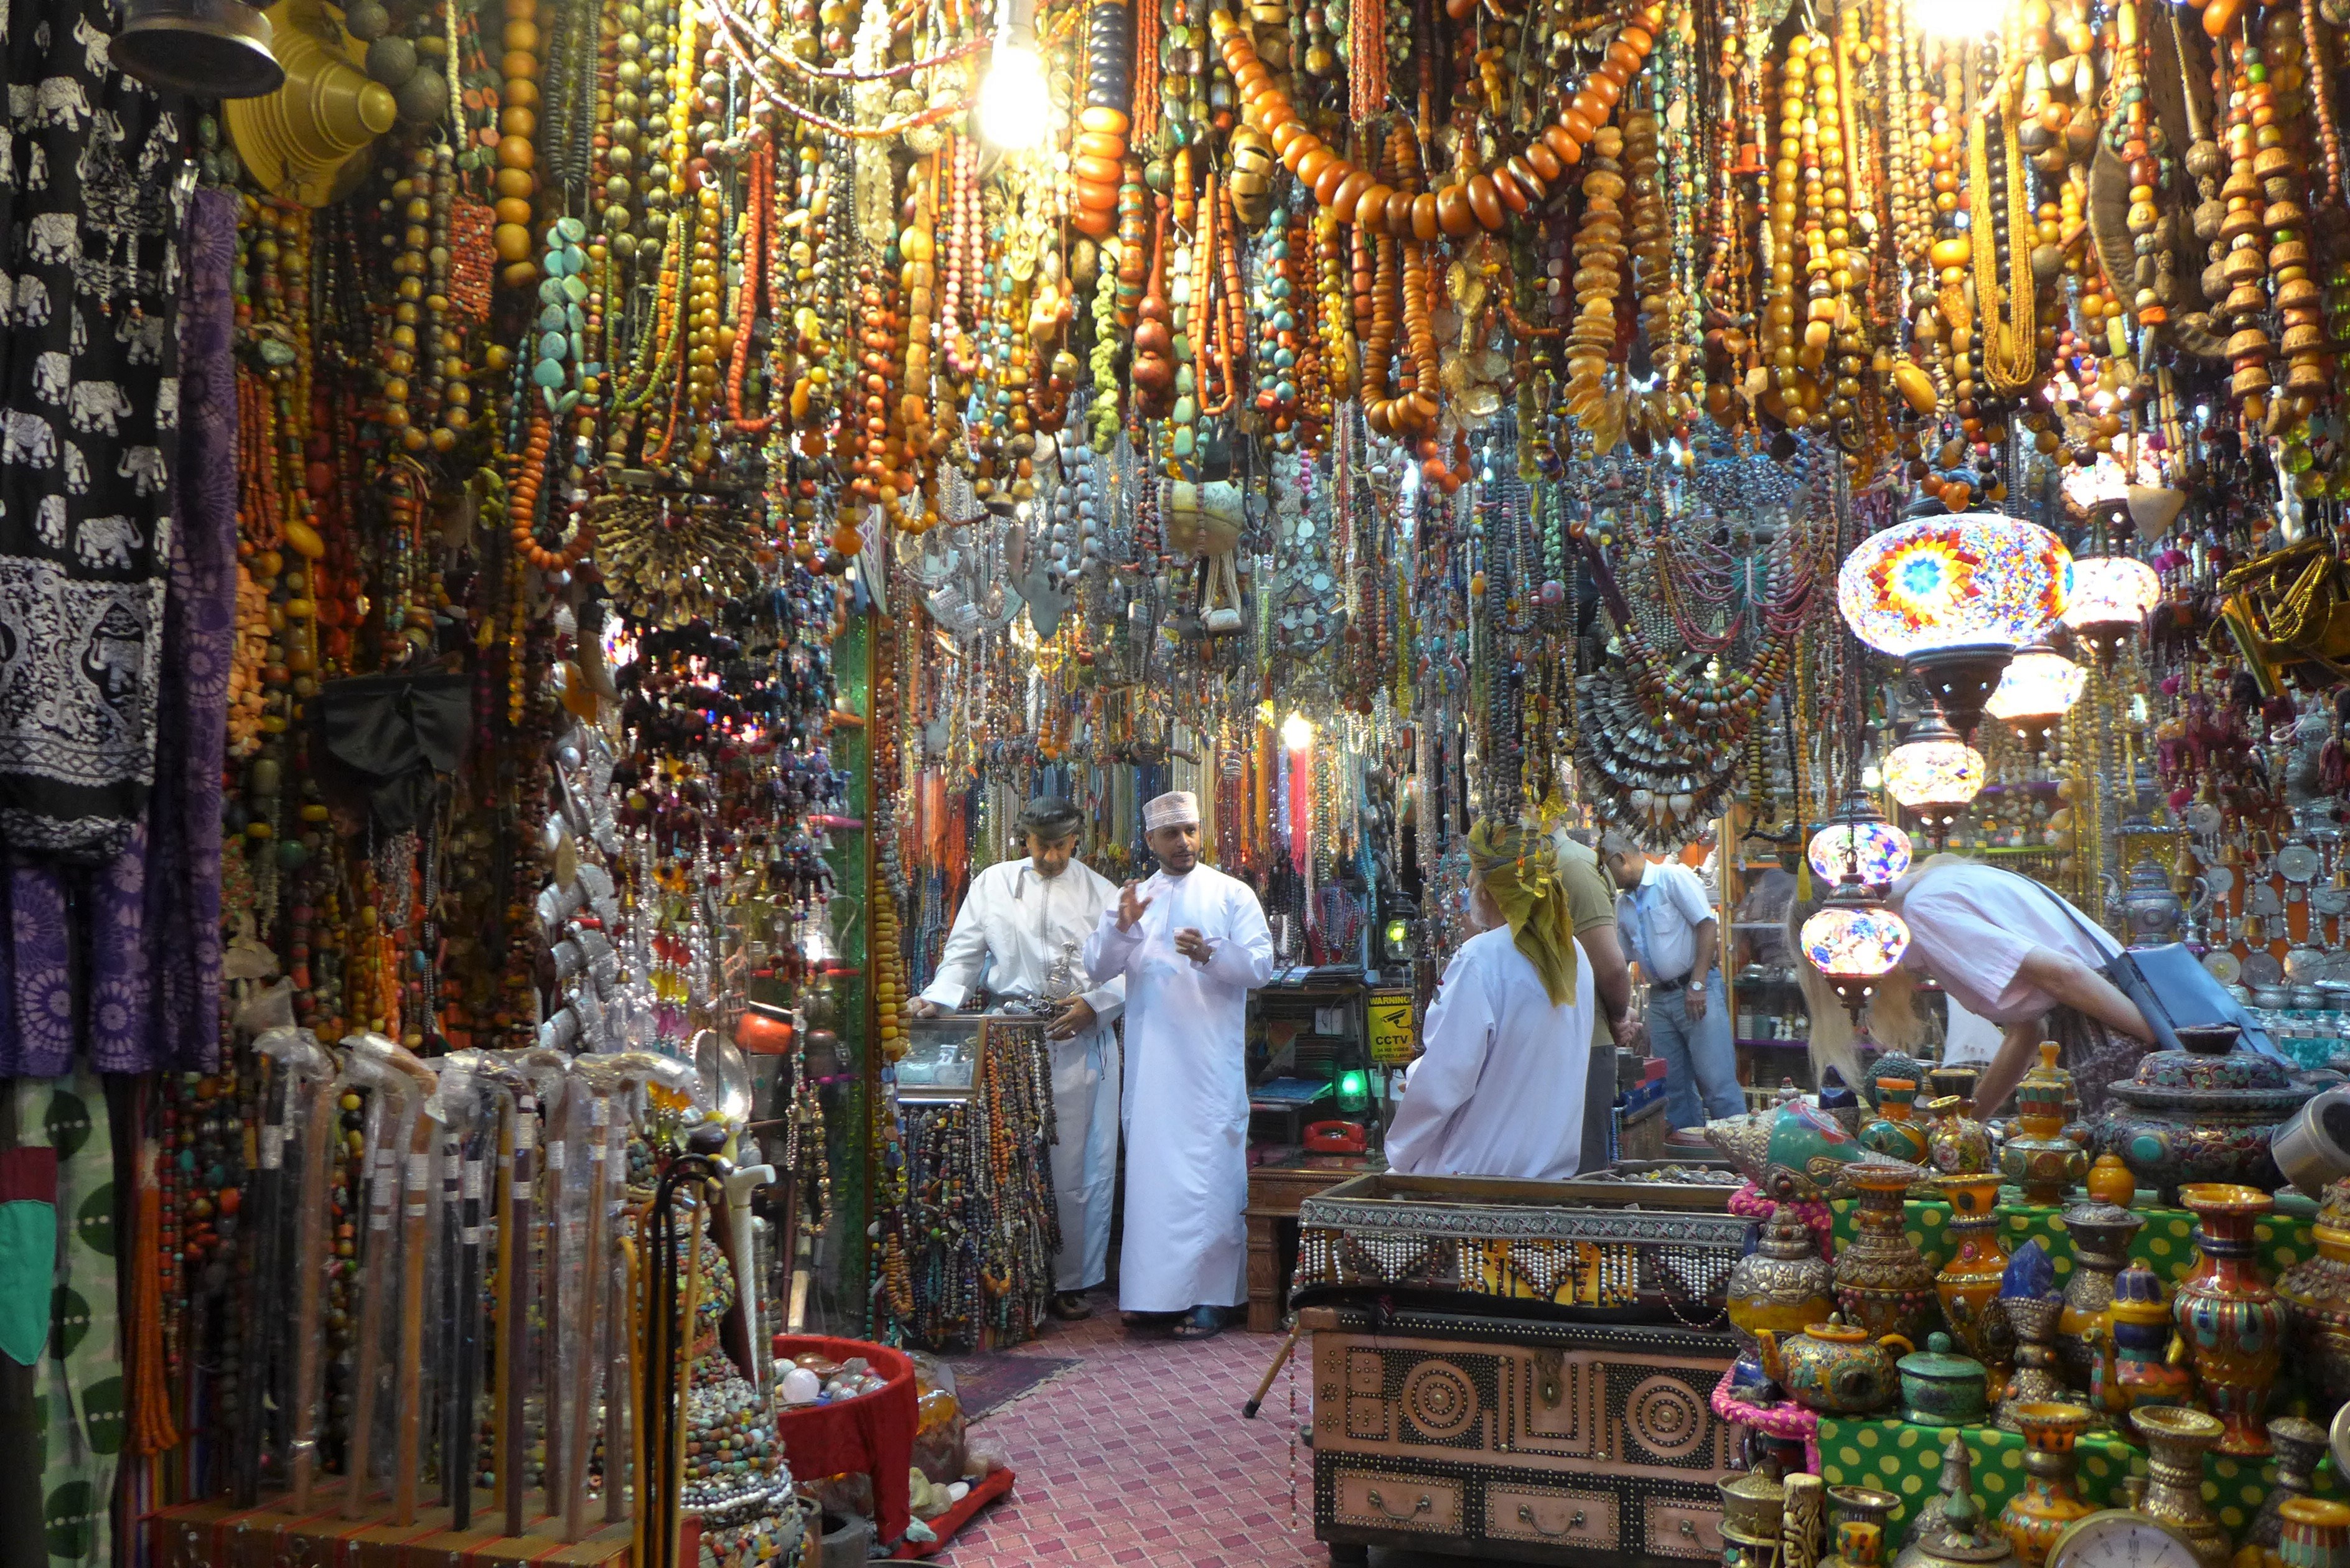 Neben den vielen Souvenirgeschäften gibt es auch Läden mit echten Schätzen aus dem ganzen arabischen Raum.